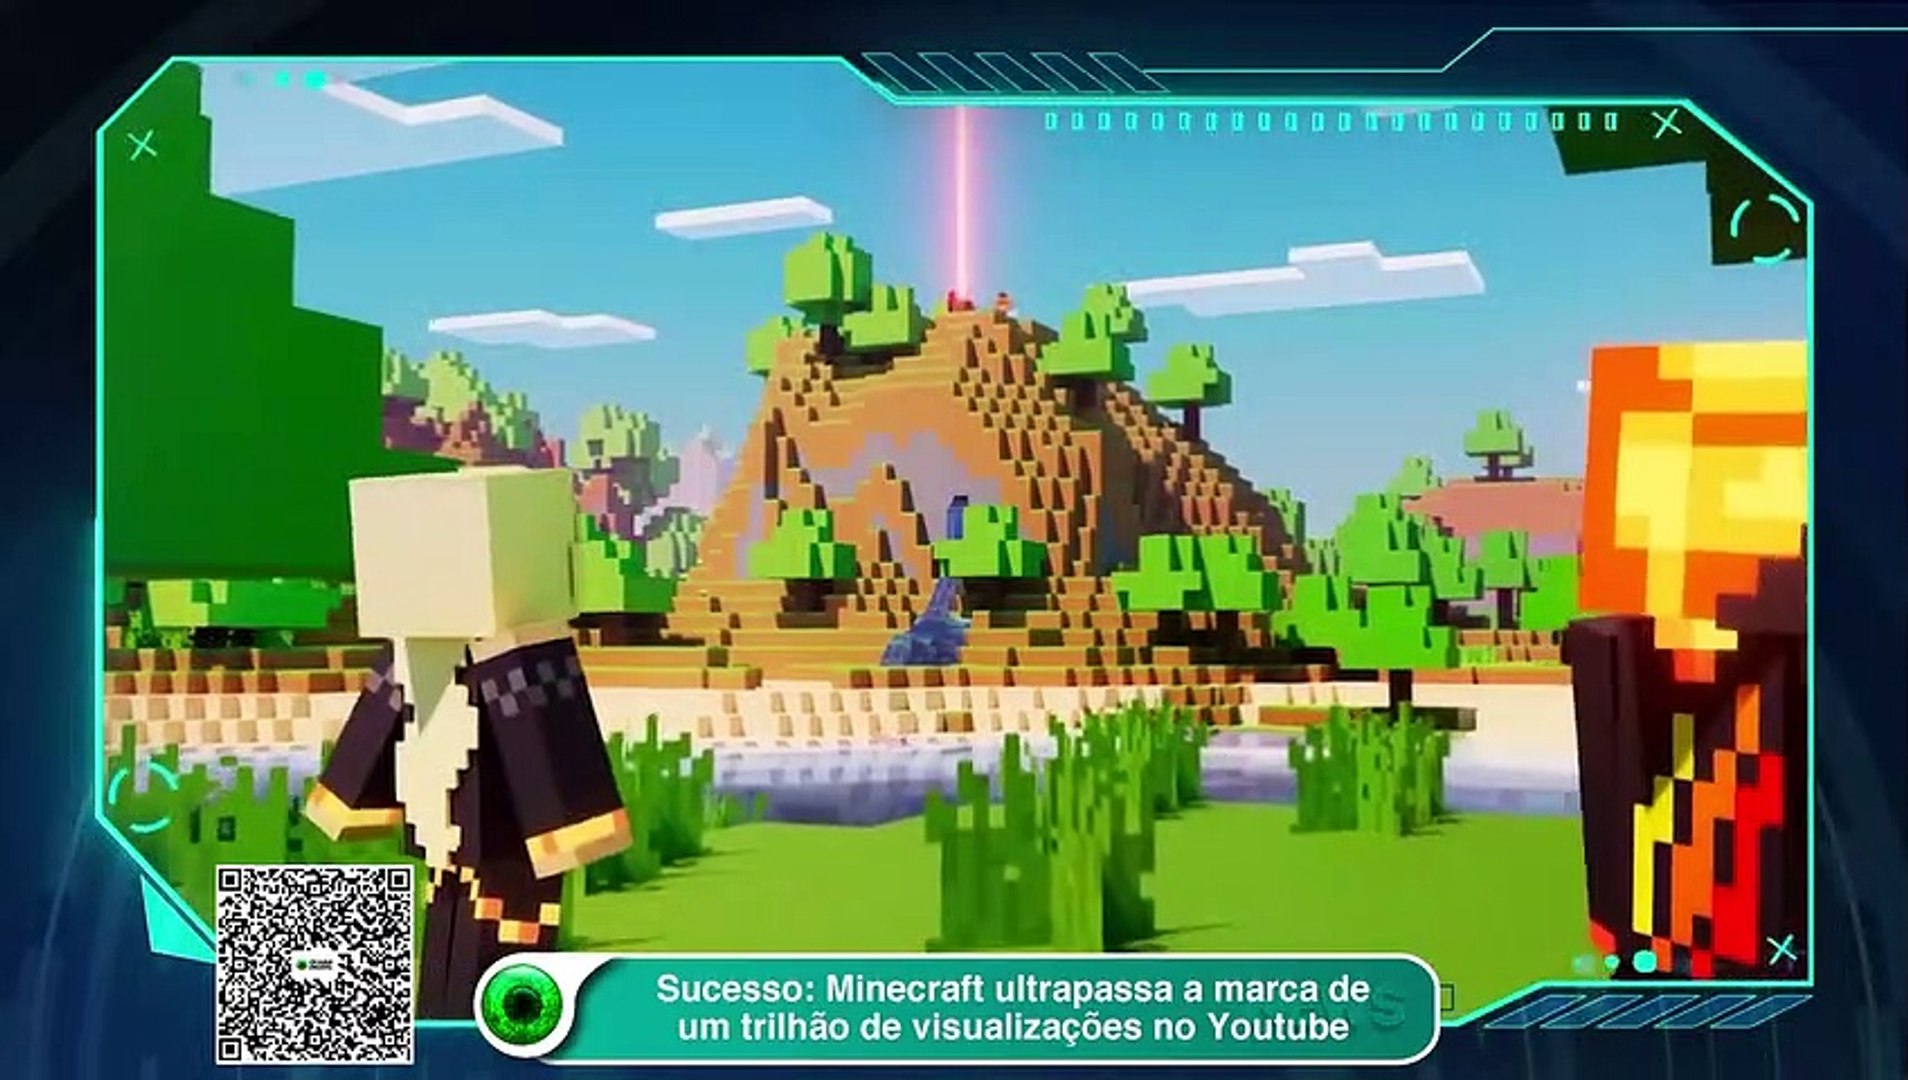 comemora que Minecraft bateu um trilhão de visualizações na  plataforma